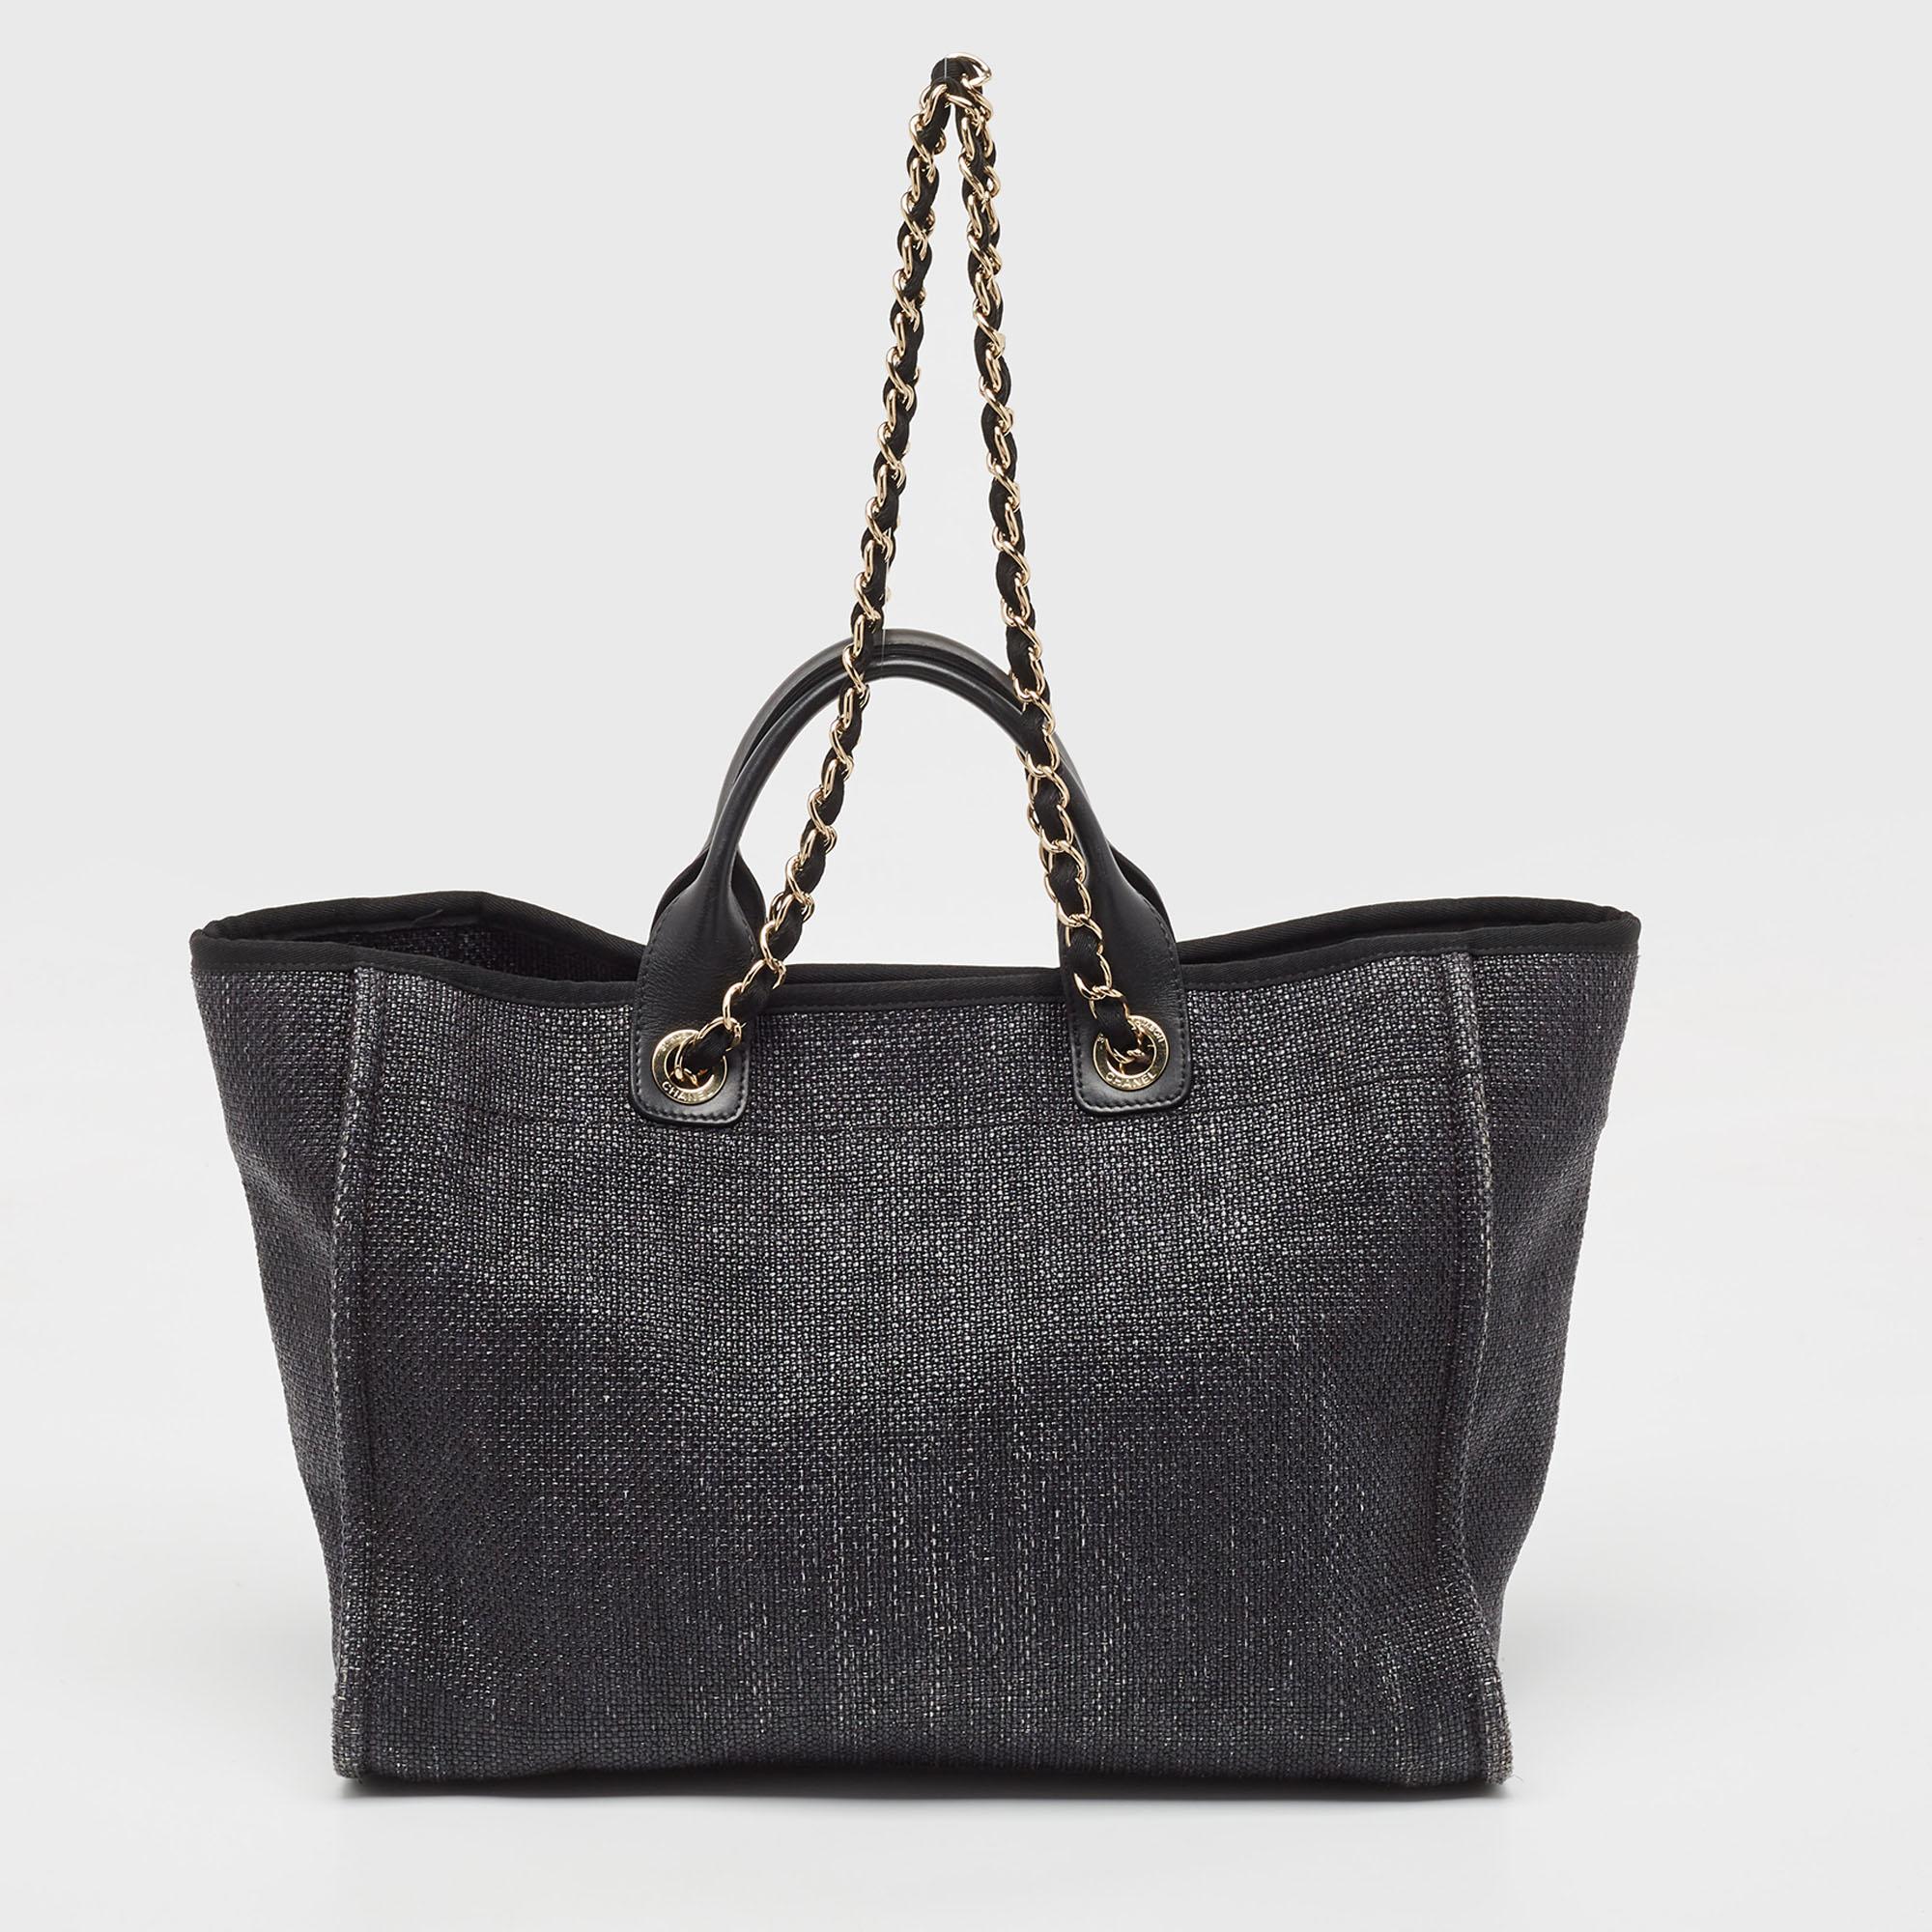 Élevez votre style avec ce sac Chanel Deauville. Alliant forme et fonction, cet accessoire exquis incarne la sophistication, vous assurant de vous démarquer avec élégance et praticité à vos côtés.

Comprend : Sac à poussière d'origine, livret